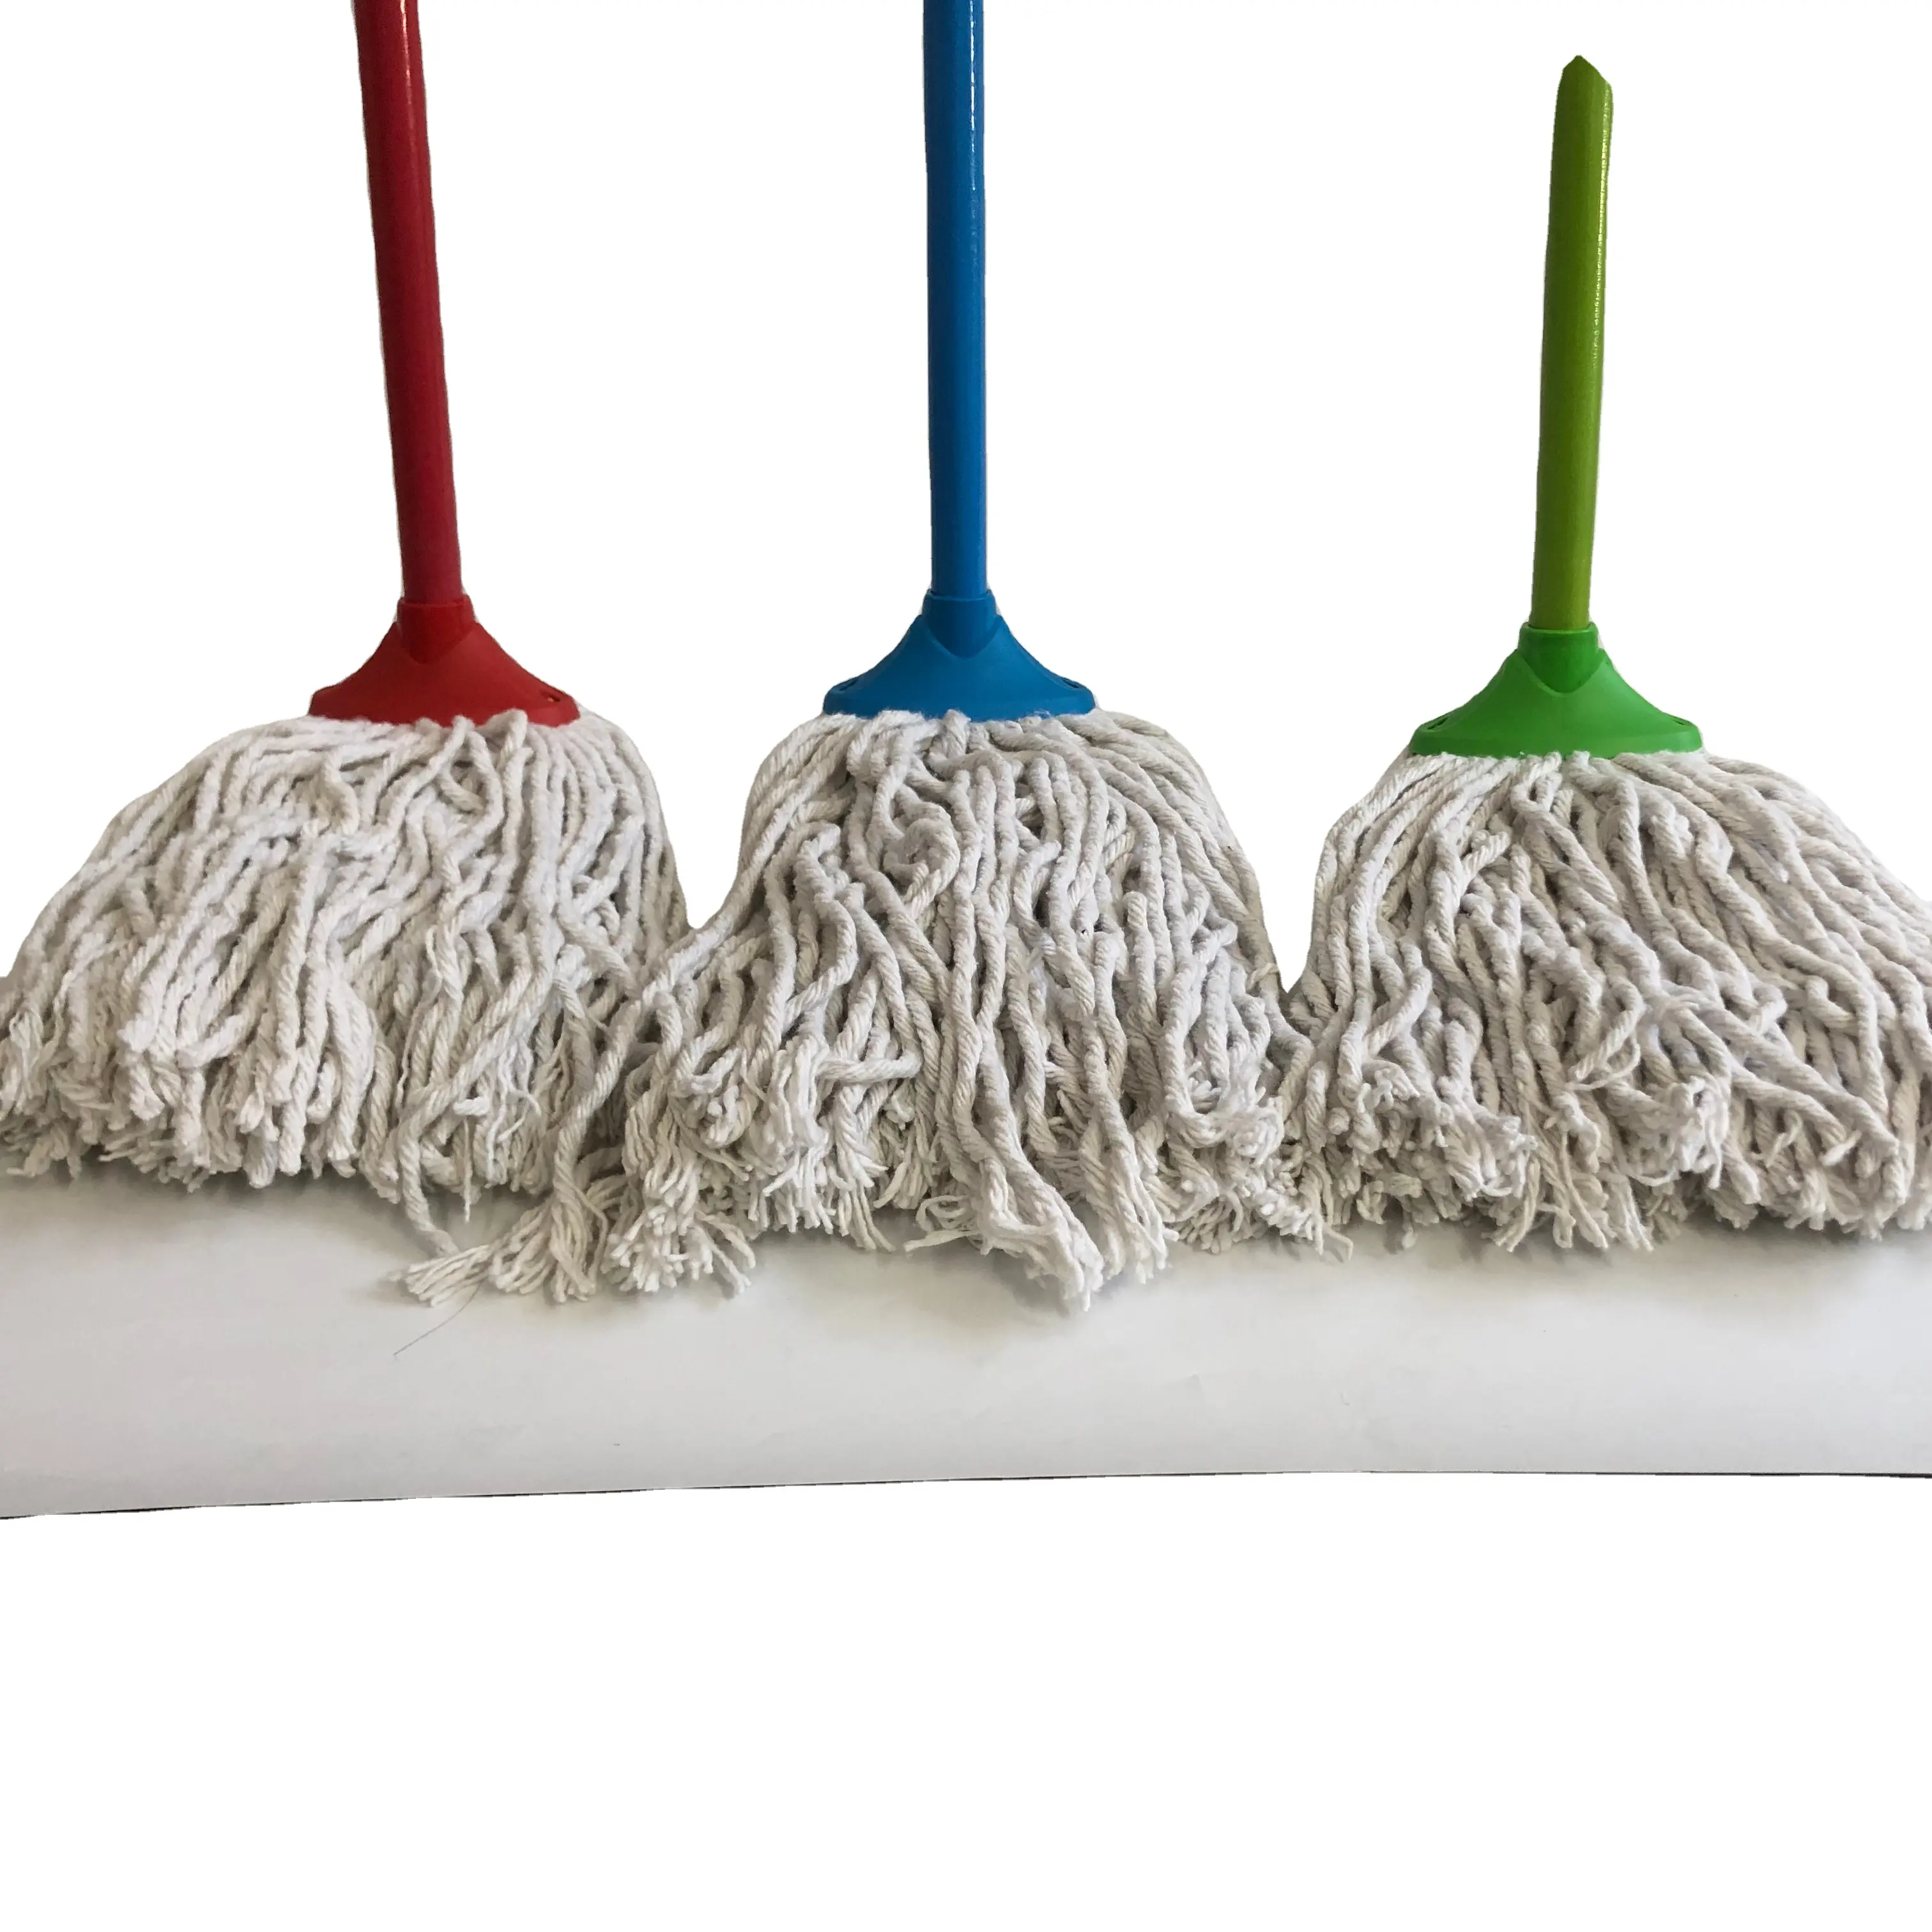 クリーンルームモップほこりのない綿モップ家庭用品用のさまざまなサイズのクリーニングモップ家の床の掃除